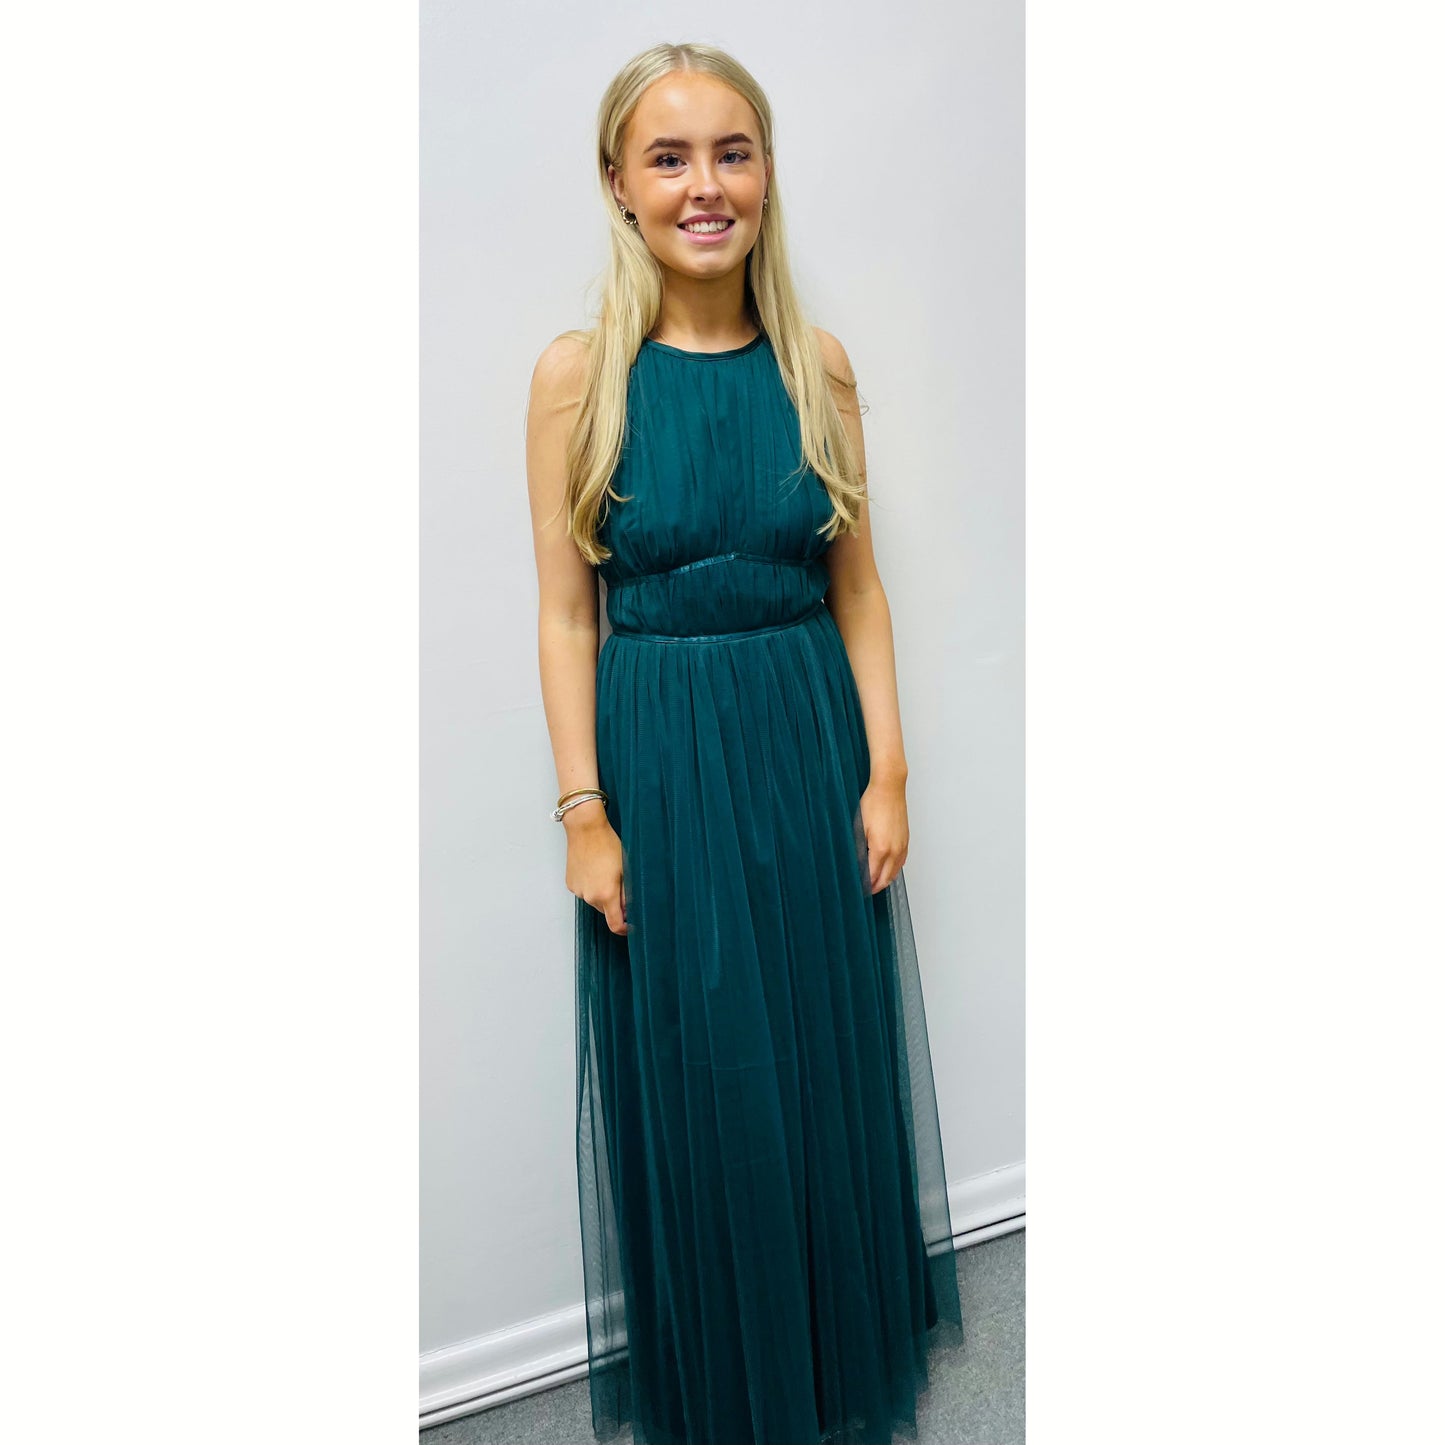 Maria Bridesmaid/Event Dress - Emerald Green